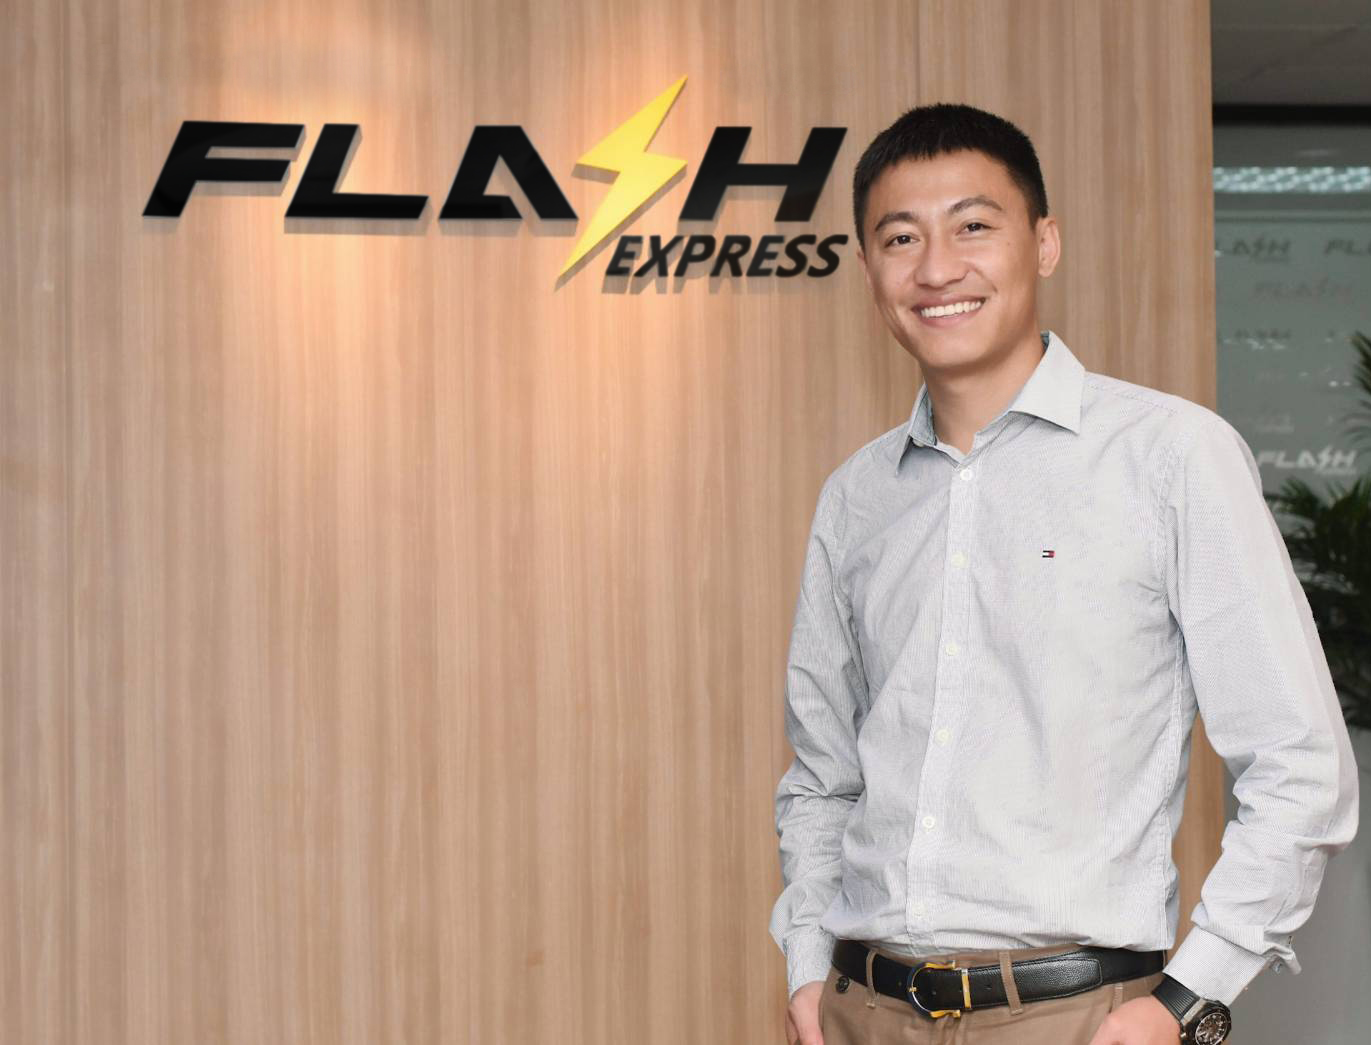 Flash express เพิ่มเม็ดเงินลงทุนกว่า 3,000 ล้านบาท วางโมเดลแพลตฟอร์ม อี-คอมเมิร์ซ แบบใหม่รุกตลาด AEC